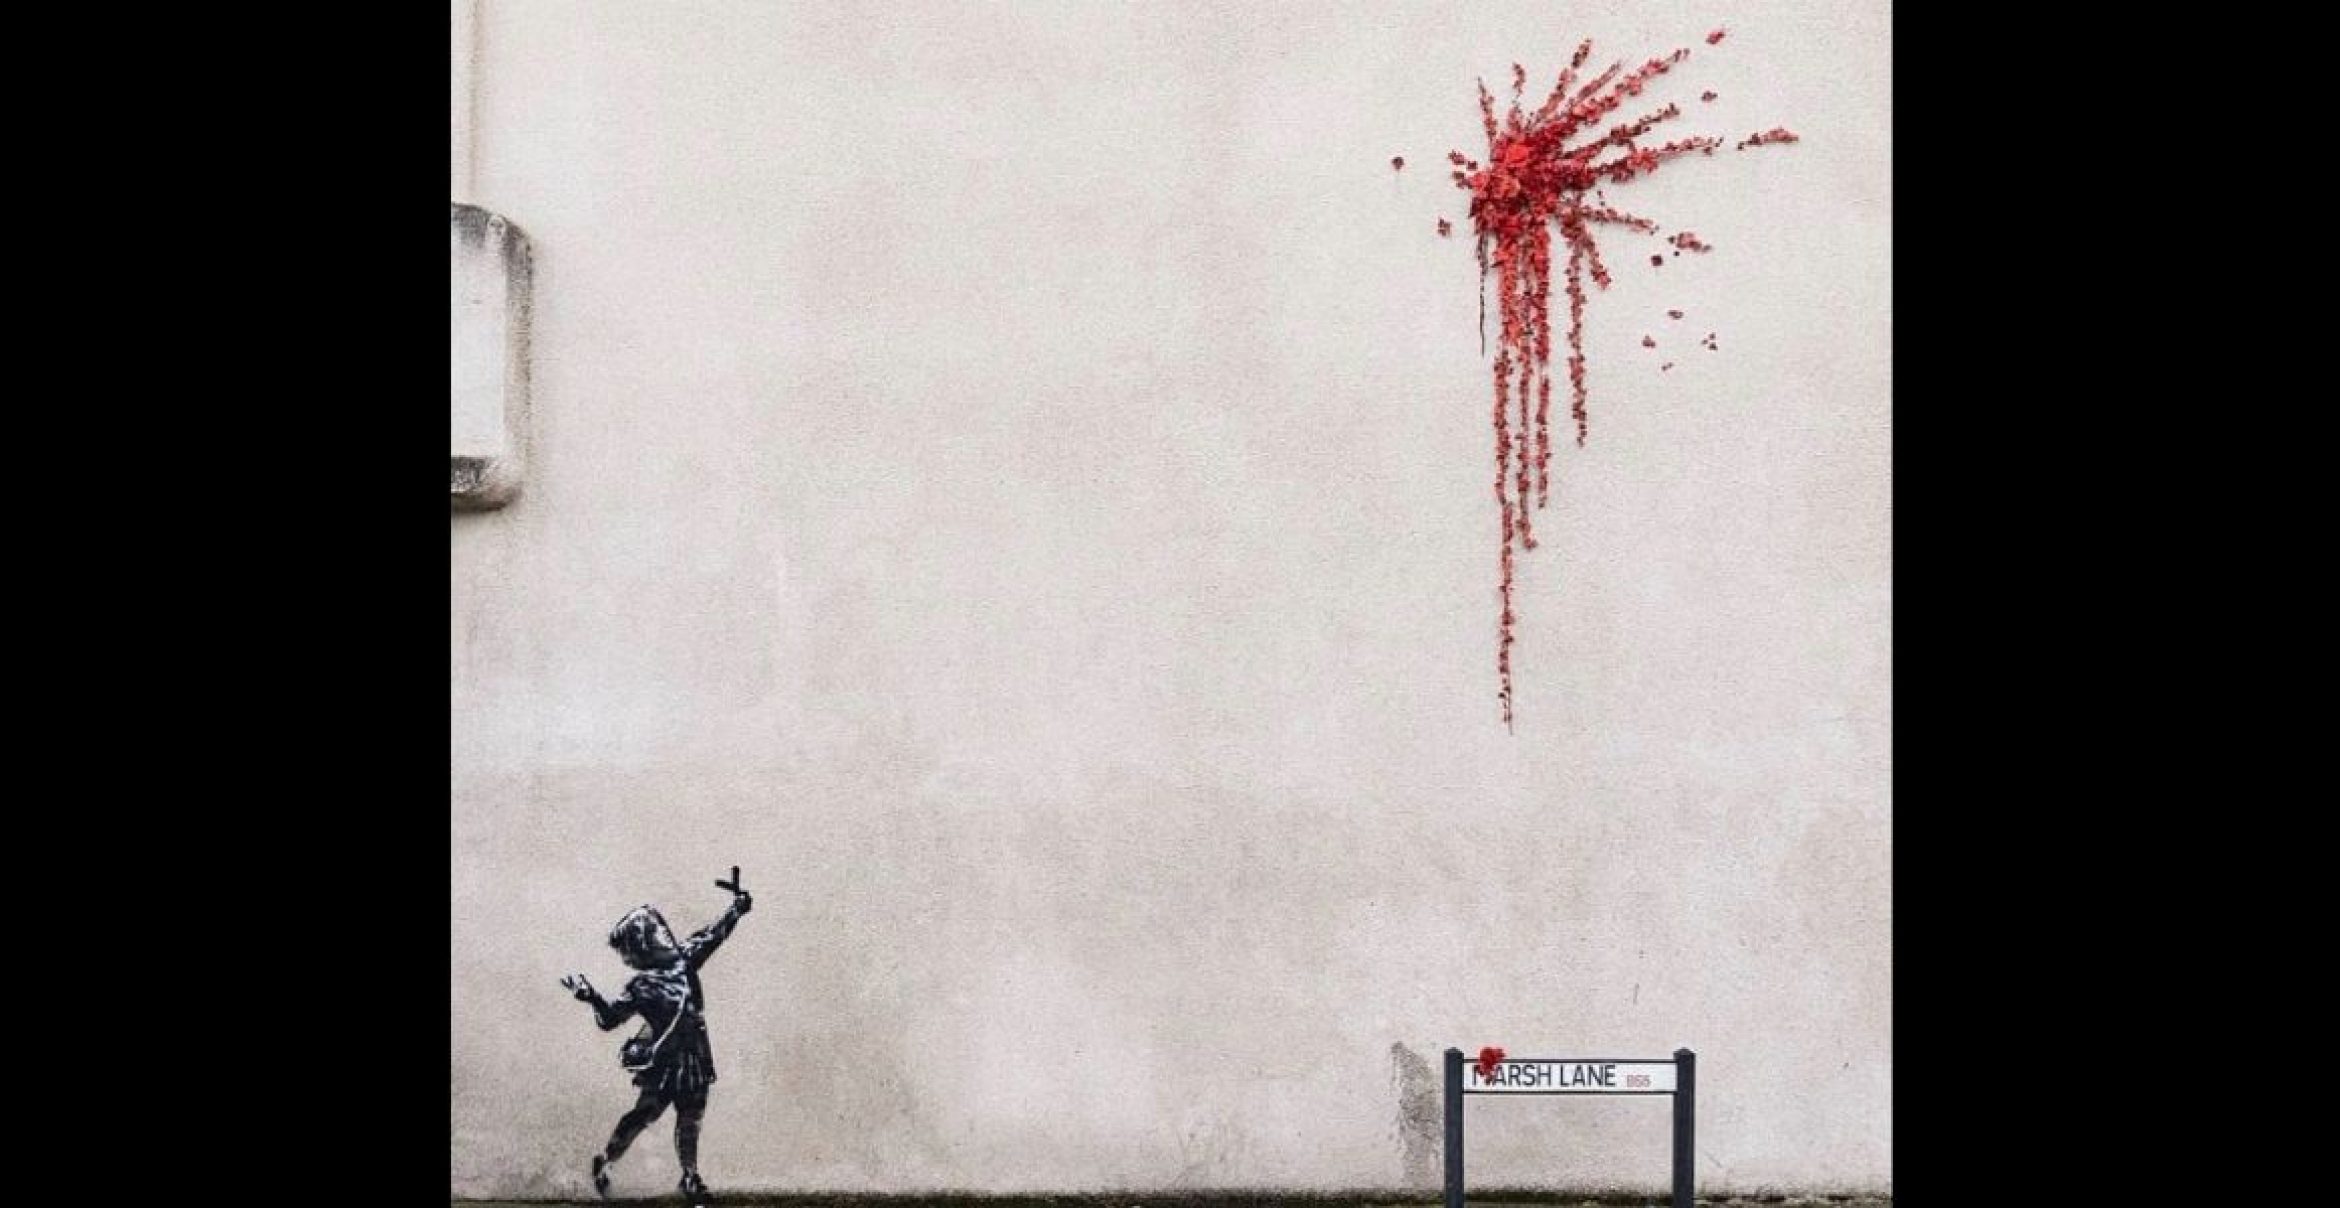 Neues Werk: Banksy feiert den Valentinstag auf seine Weise